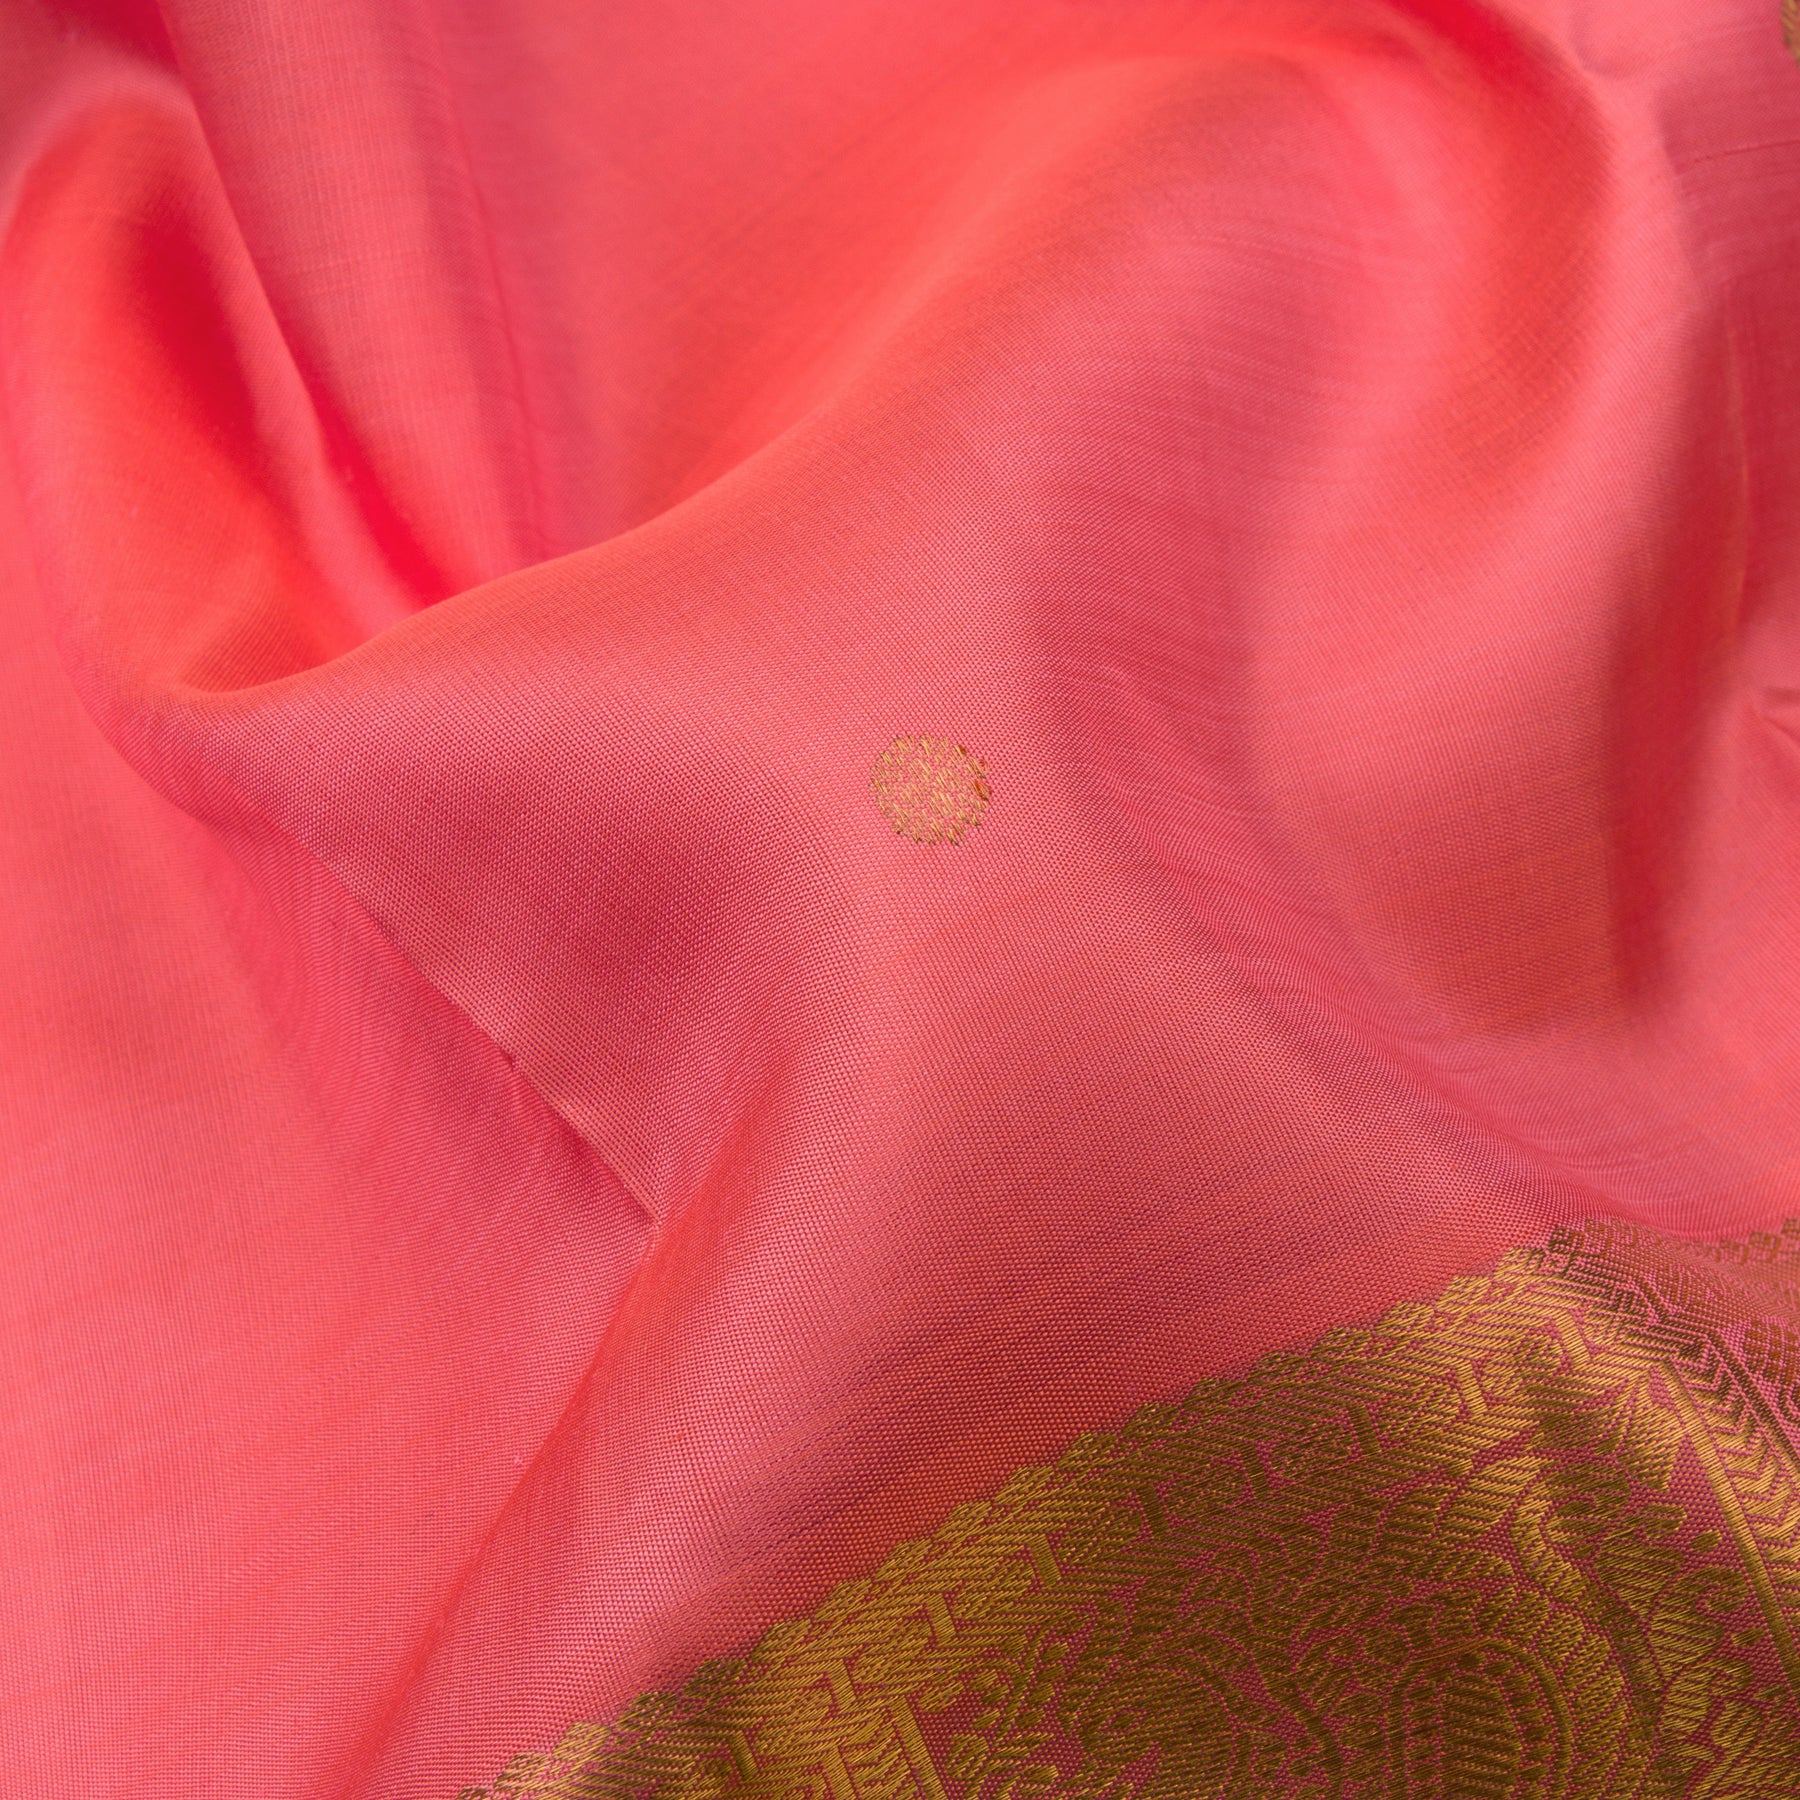 Kanakavalli Kanjivaram Silk Sari 22-110-HS001-12605 - Fabric View